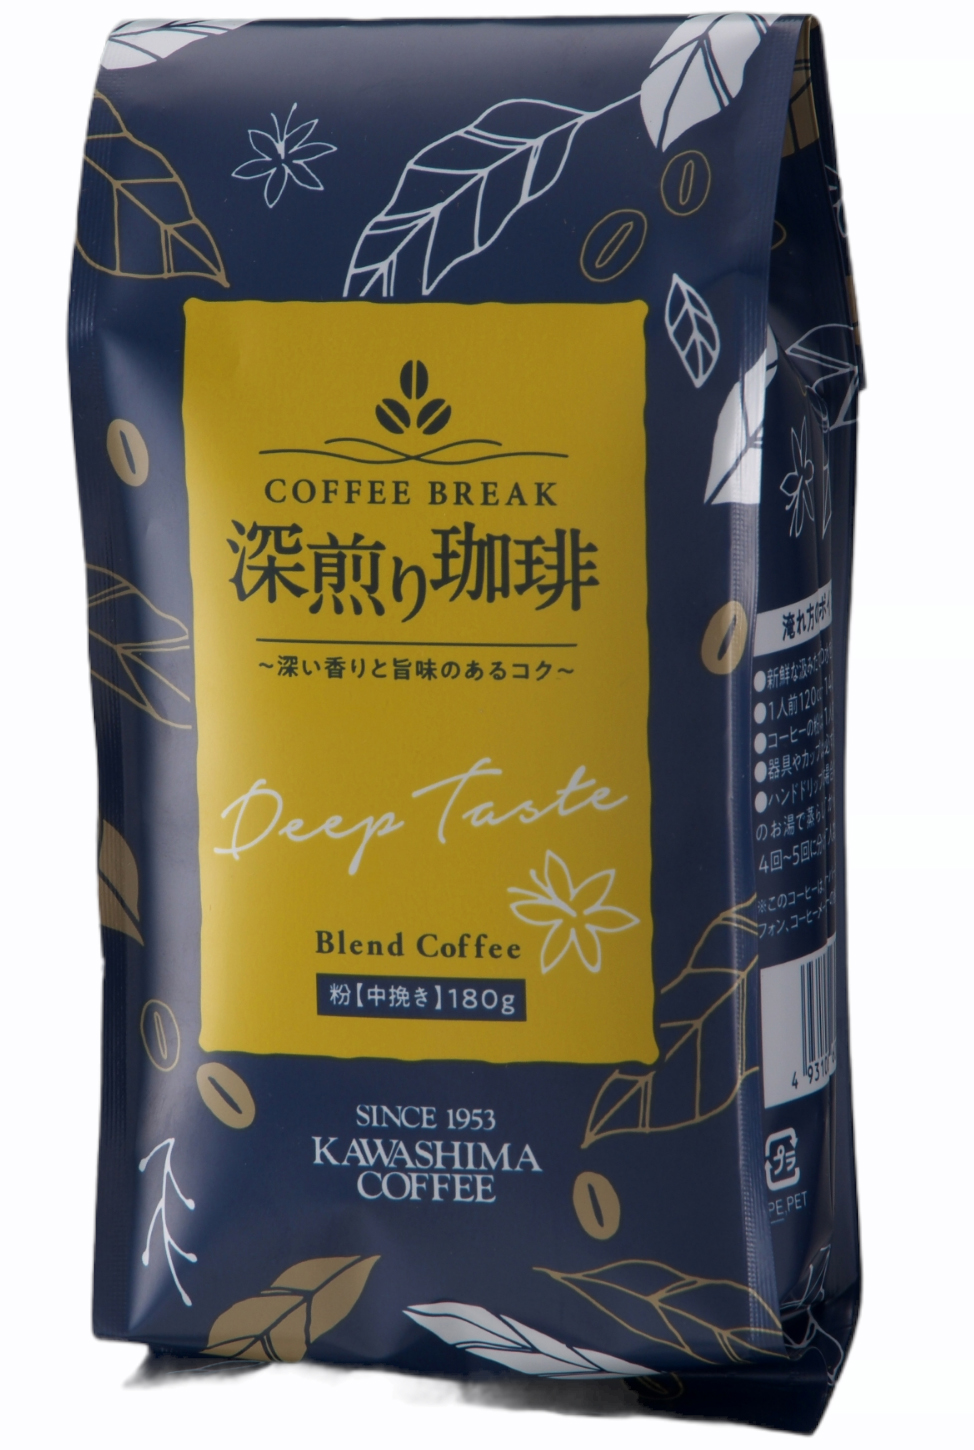 取扱商品 コーヒー豆の製造、卸売、PB・OEM商品の企画制作 コーヒー乃川島